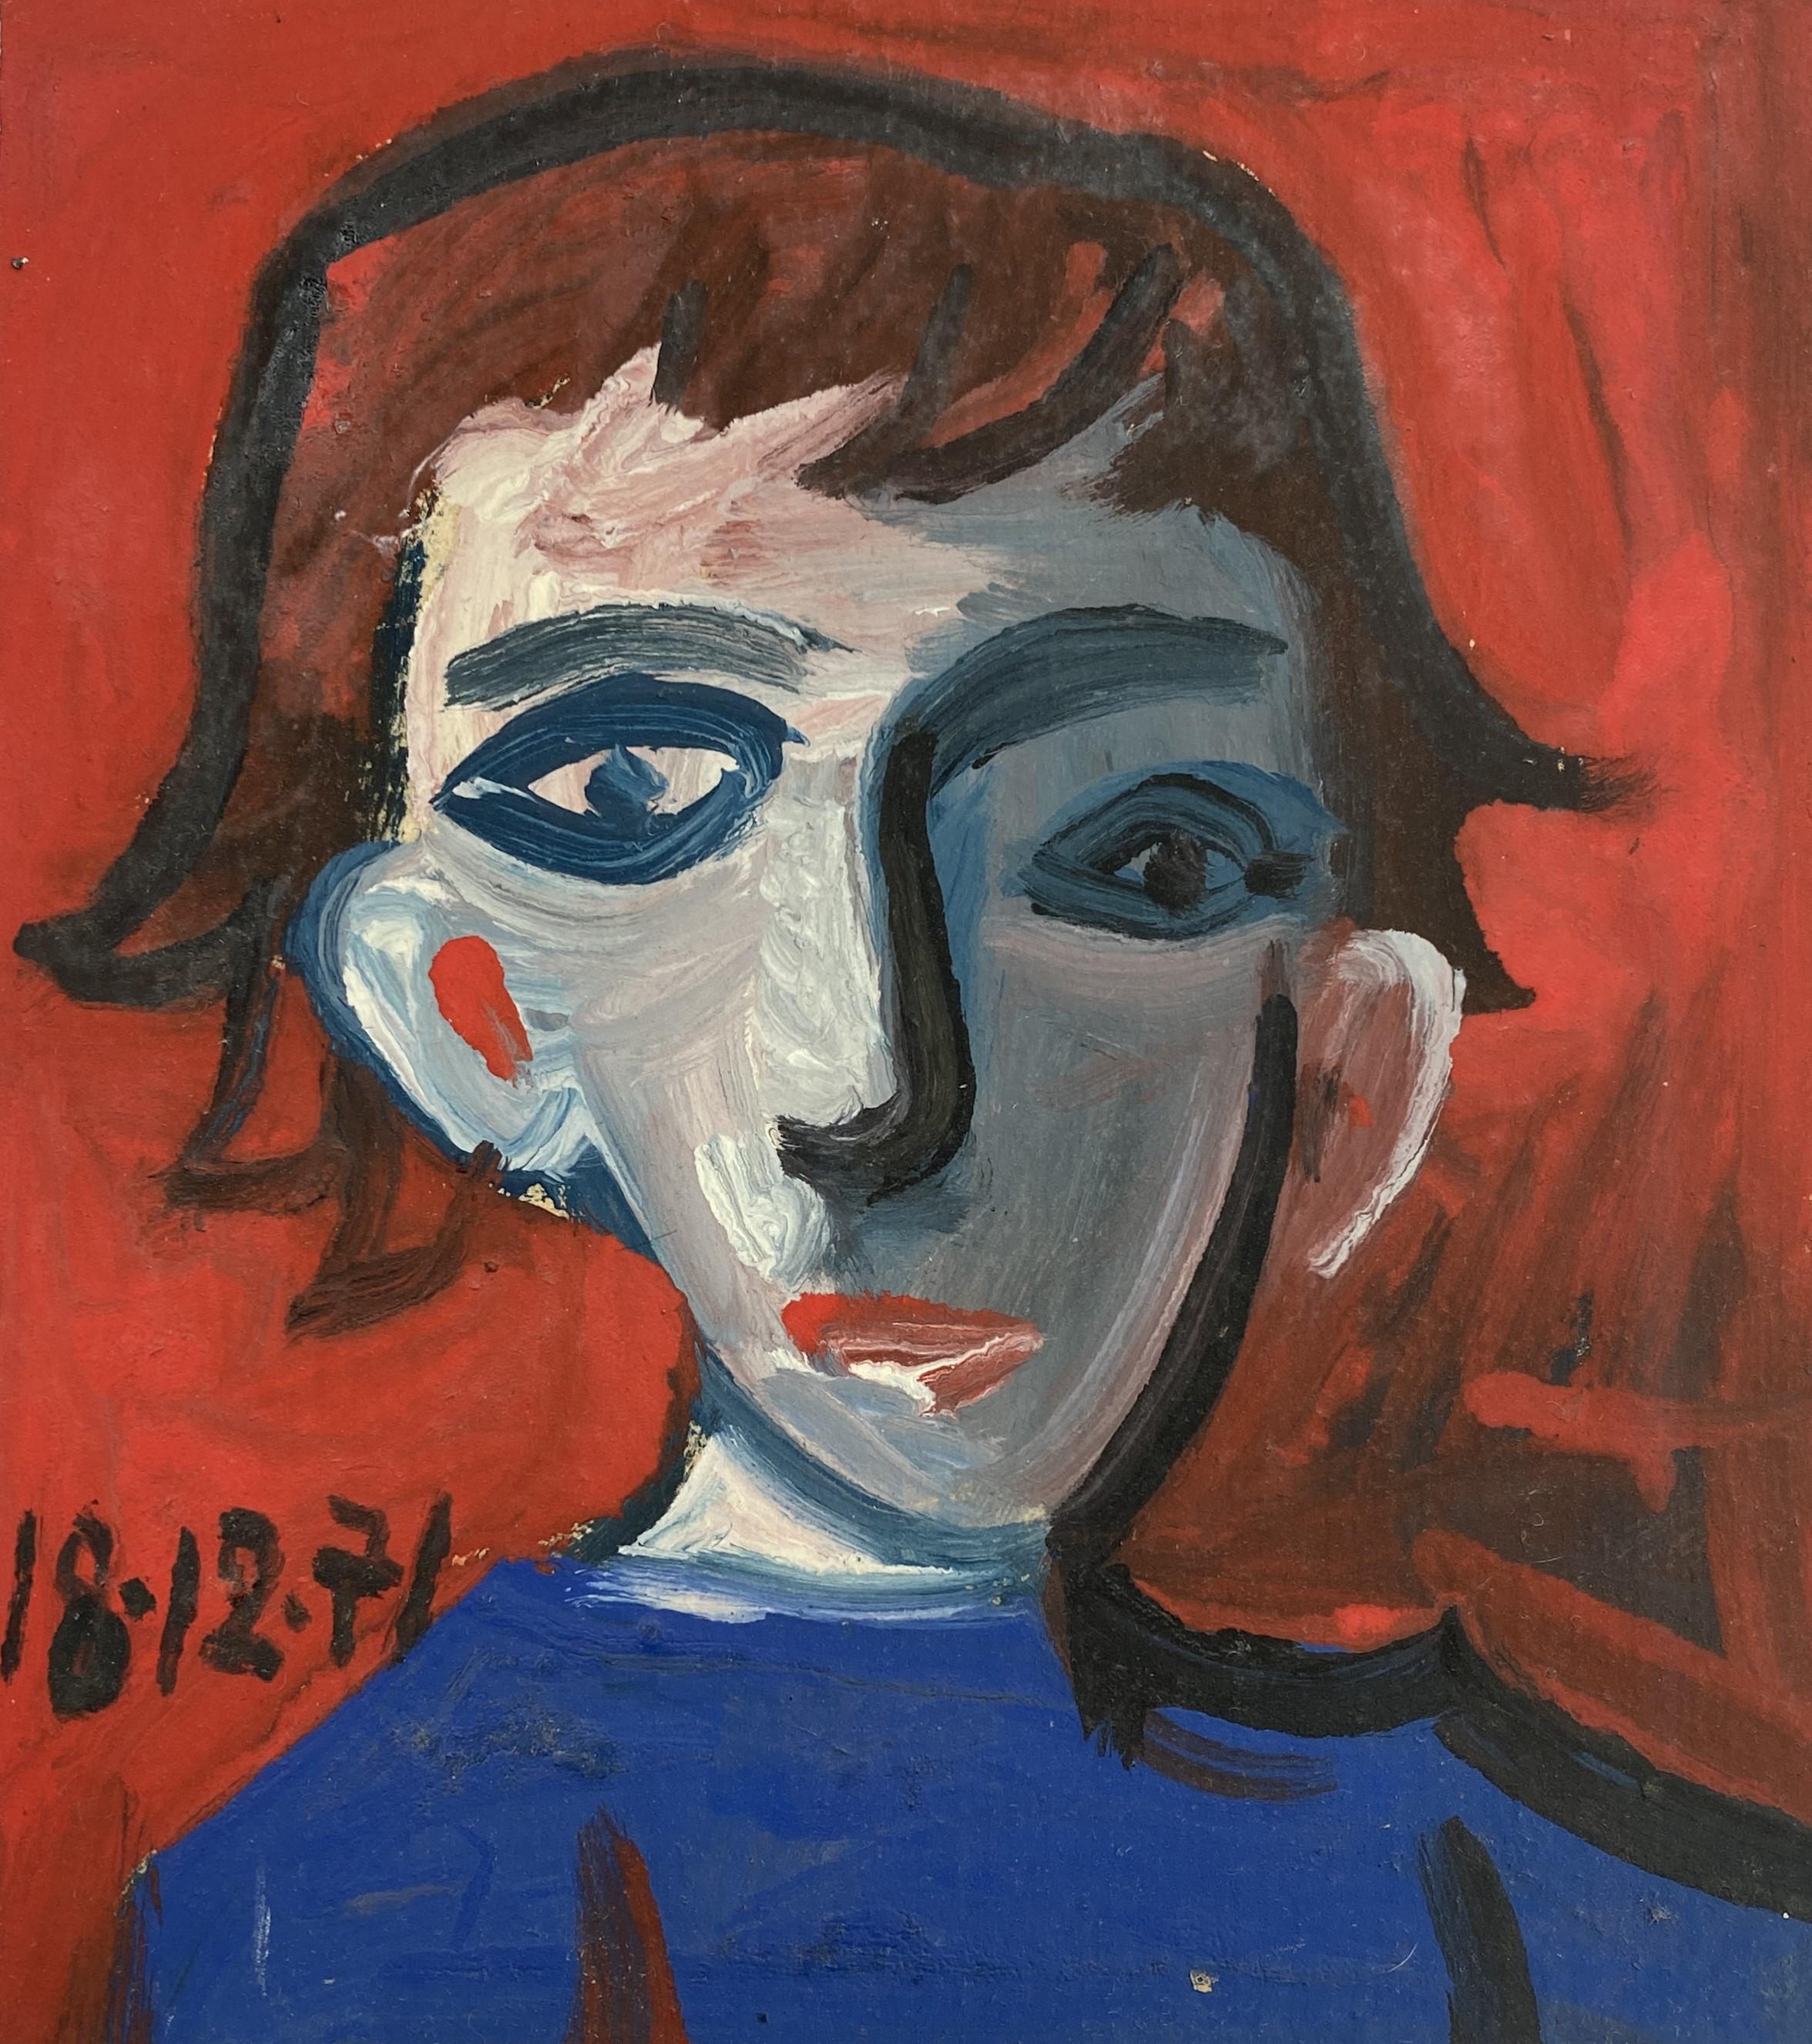 Garcon Rouge et Bleu von Raymond Debieve, französisches kubistisches Porträtgemäldepapier